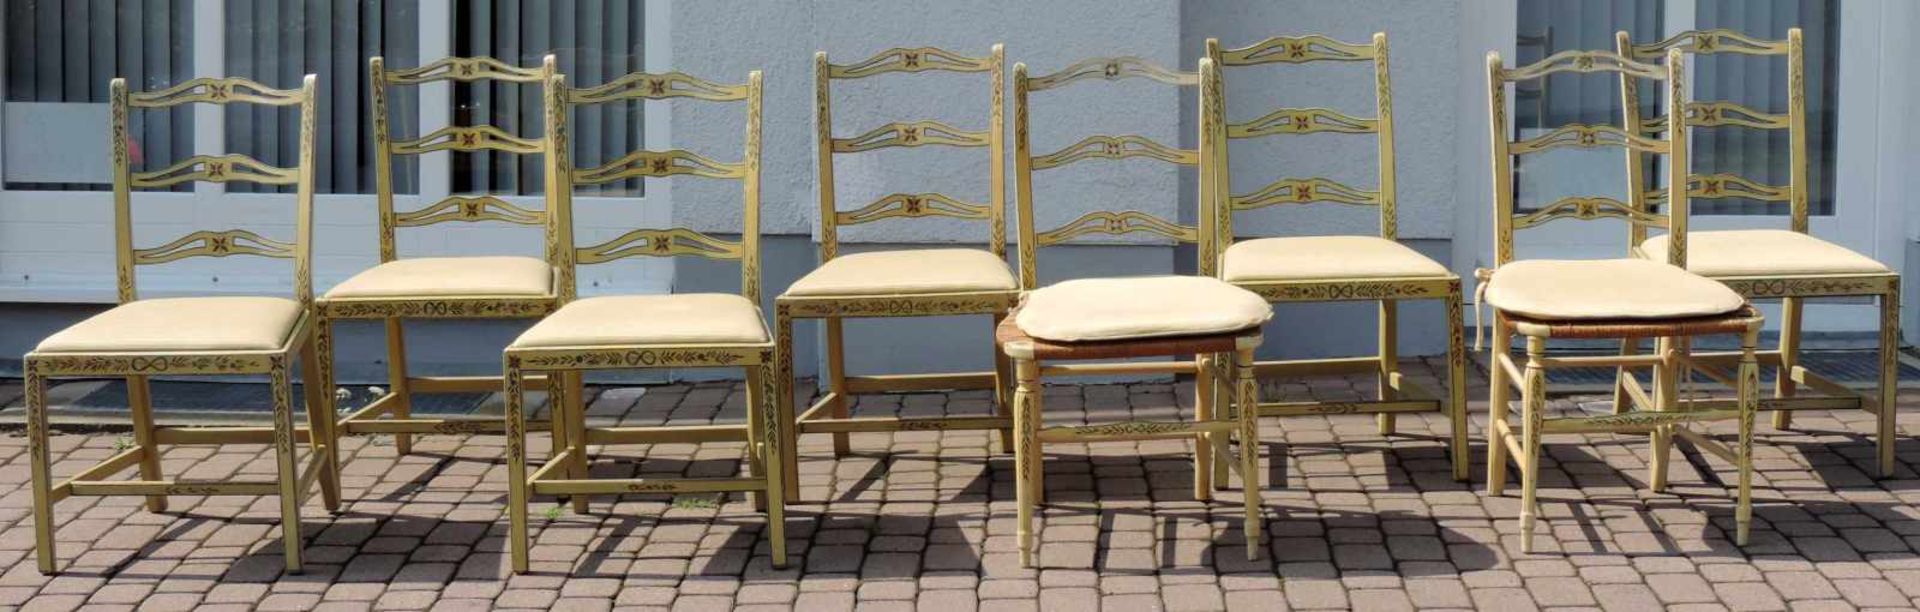 8 Armlehnstühle. Wohl Frankreich / Wallis 2. Hälfte 19. Jahrhundert. 8 armchair chairs. Probably